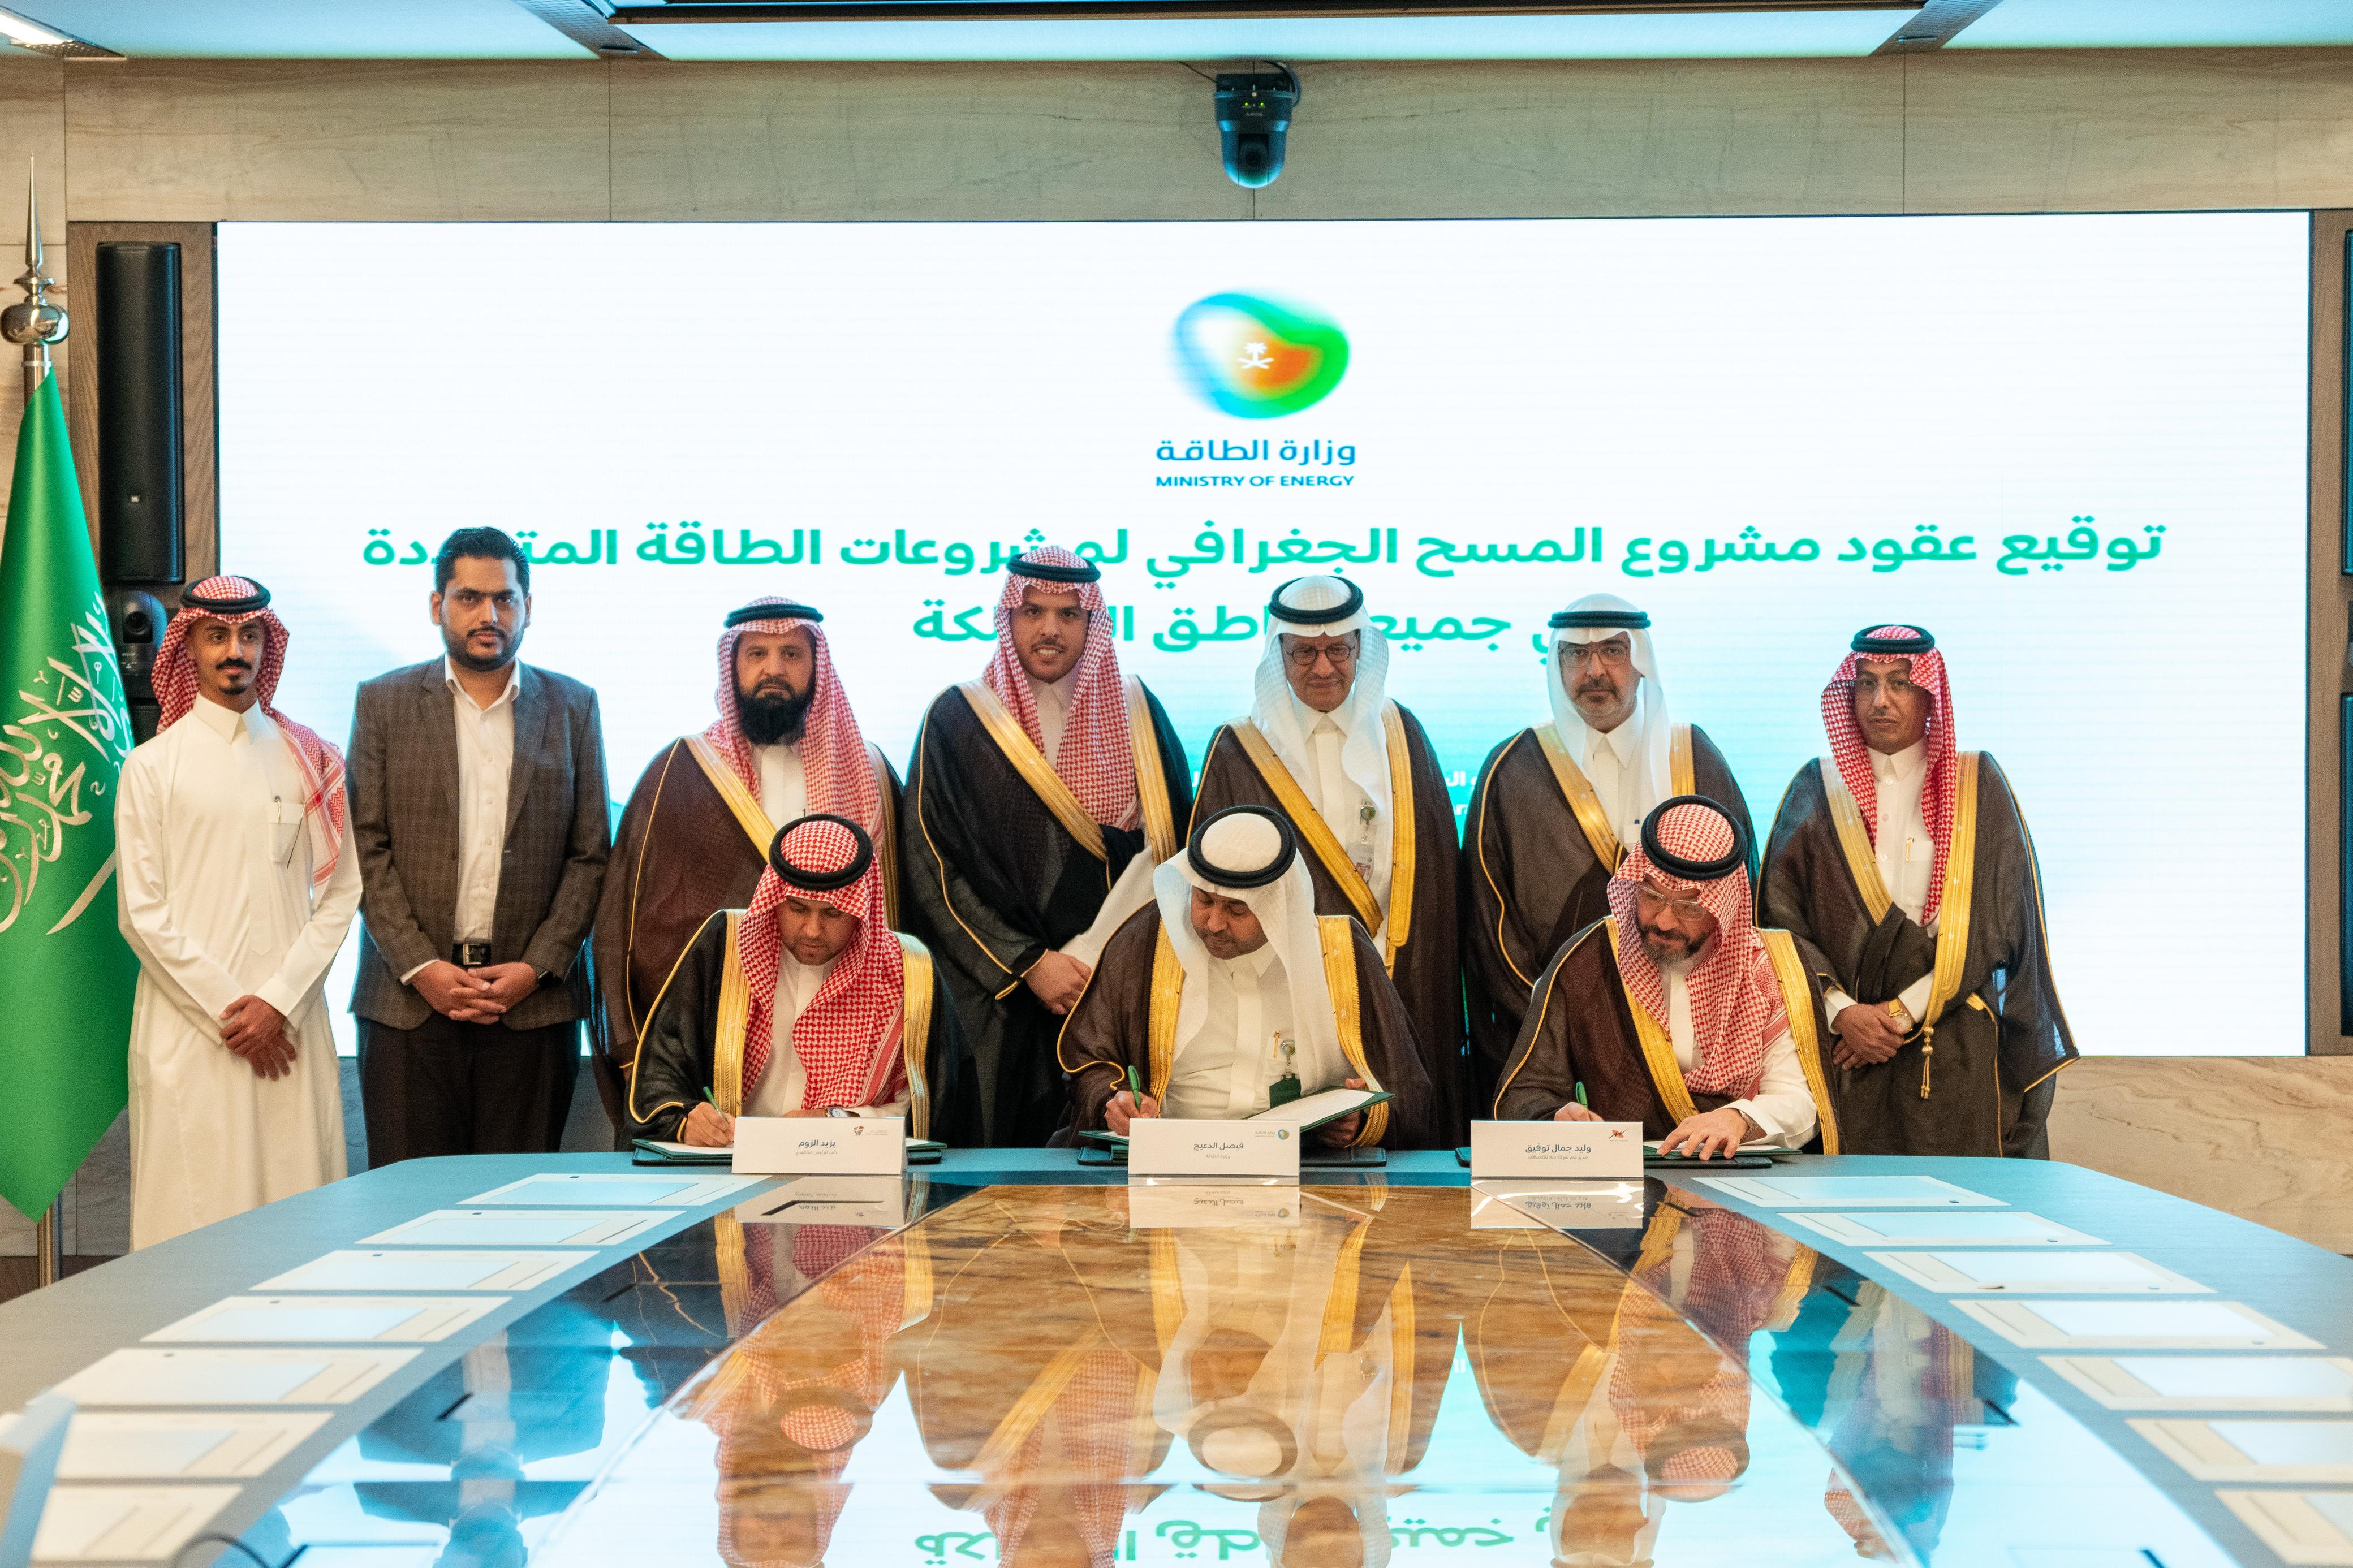 وزارة الطاقة تطلق مشروع المسح الجغرافي لمشروعات الطاقة المتجددة في المملكة الذي يُعد الأول من نوعه عالمياً